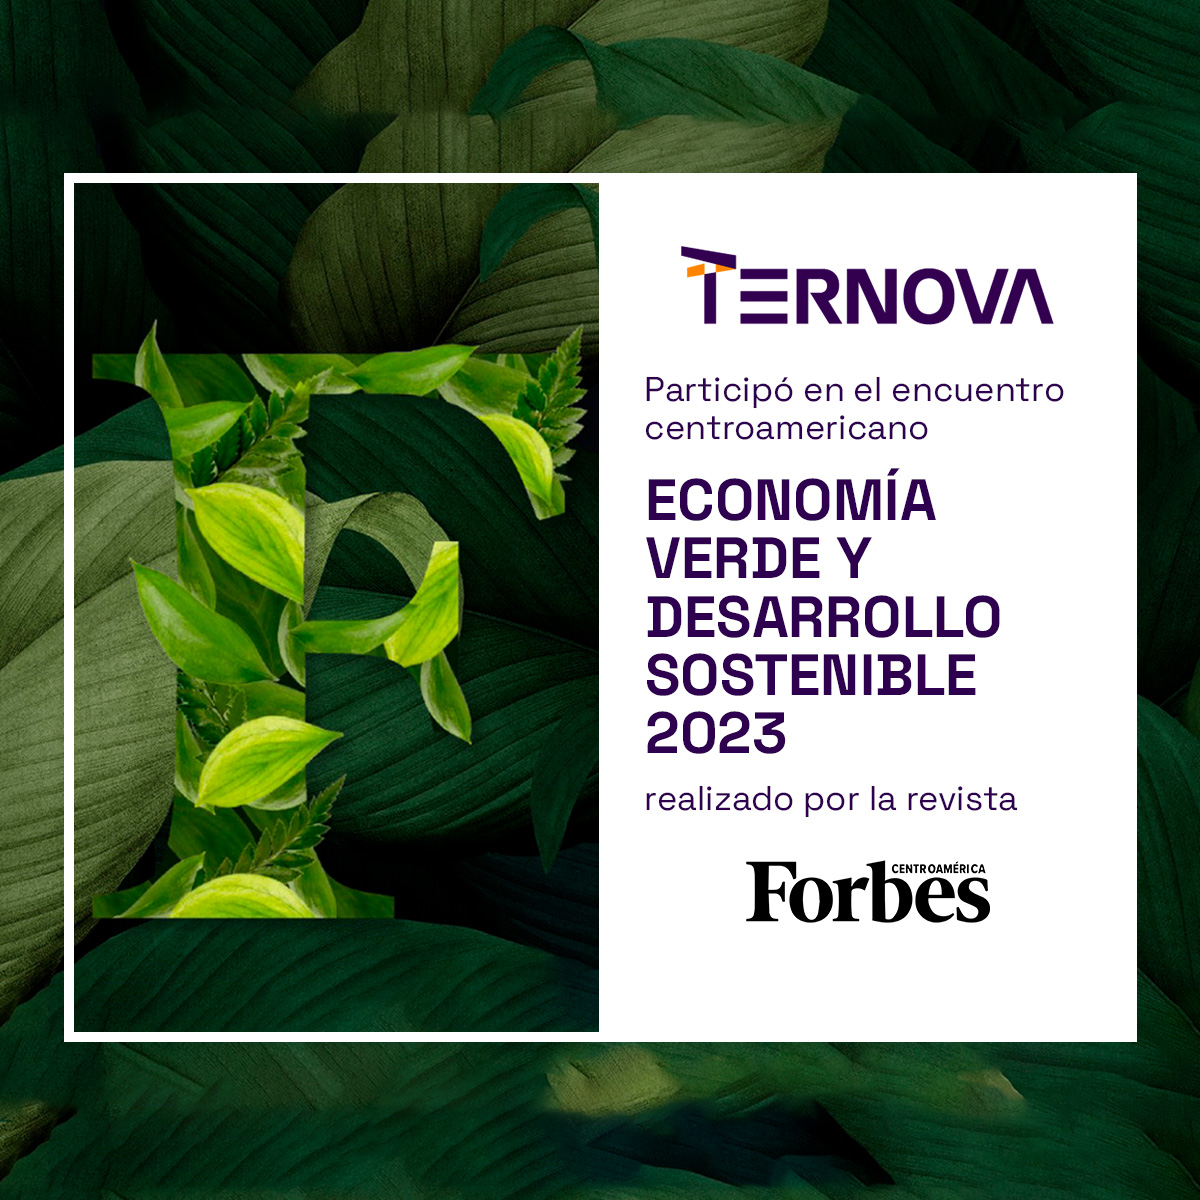 La prestigiosa Revista Forbes Centroamérica nos reconoce como uno de los lideres en sostenibilidad al seleccionarnos como parte del panel del Foro 'Economía verde y desarrollo sostenible 2023'. #Ternova #sostenibilidad #ForbesSostenible #EconomíaVerde